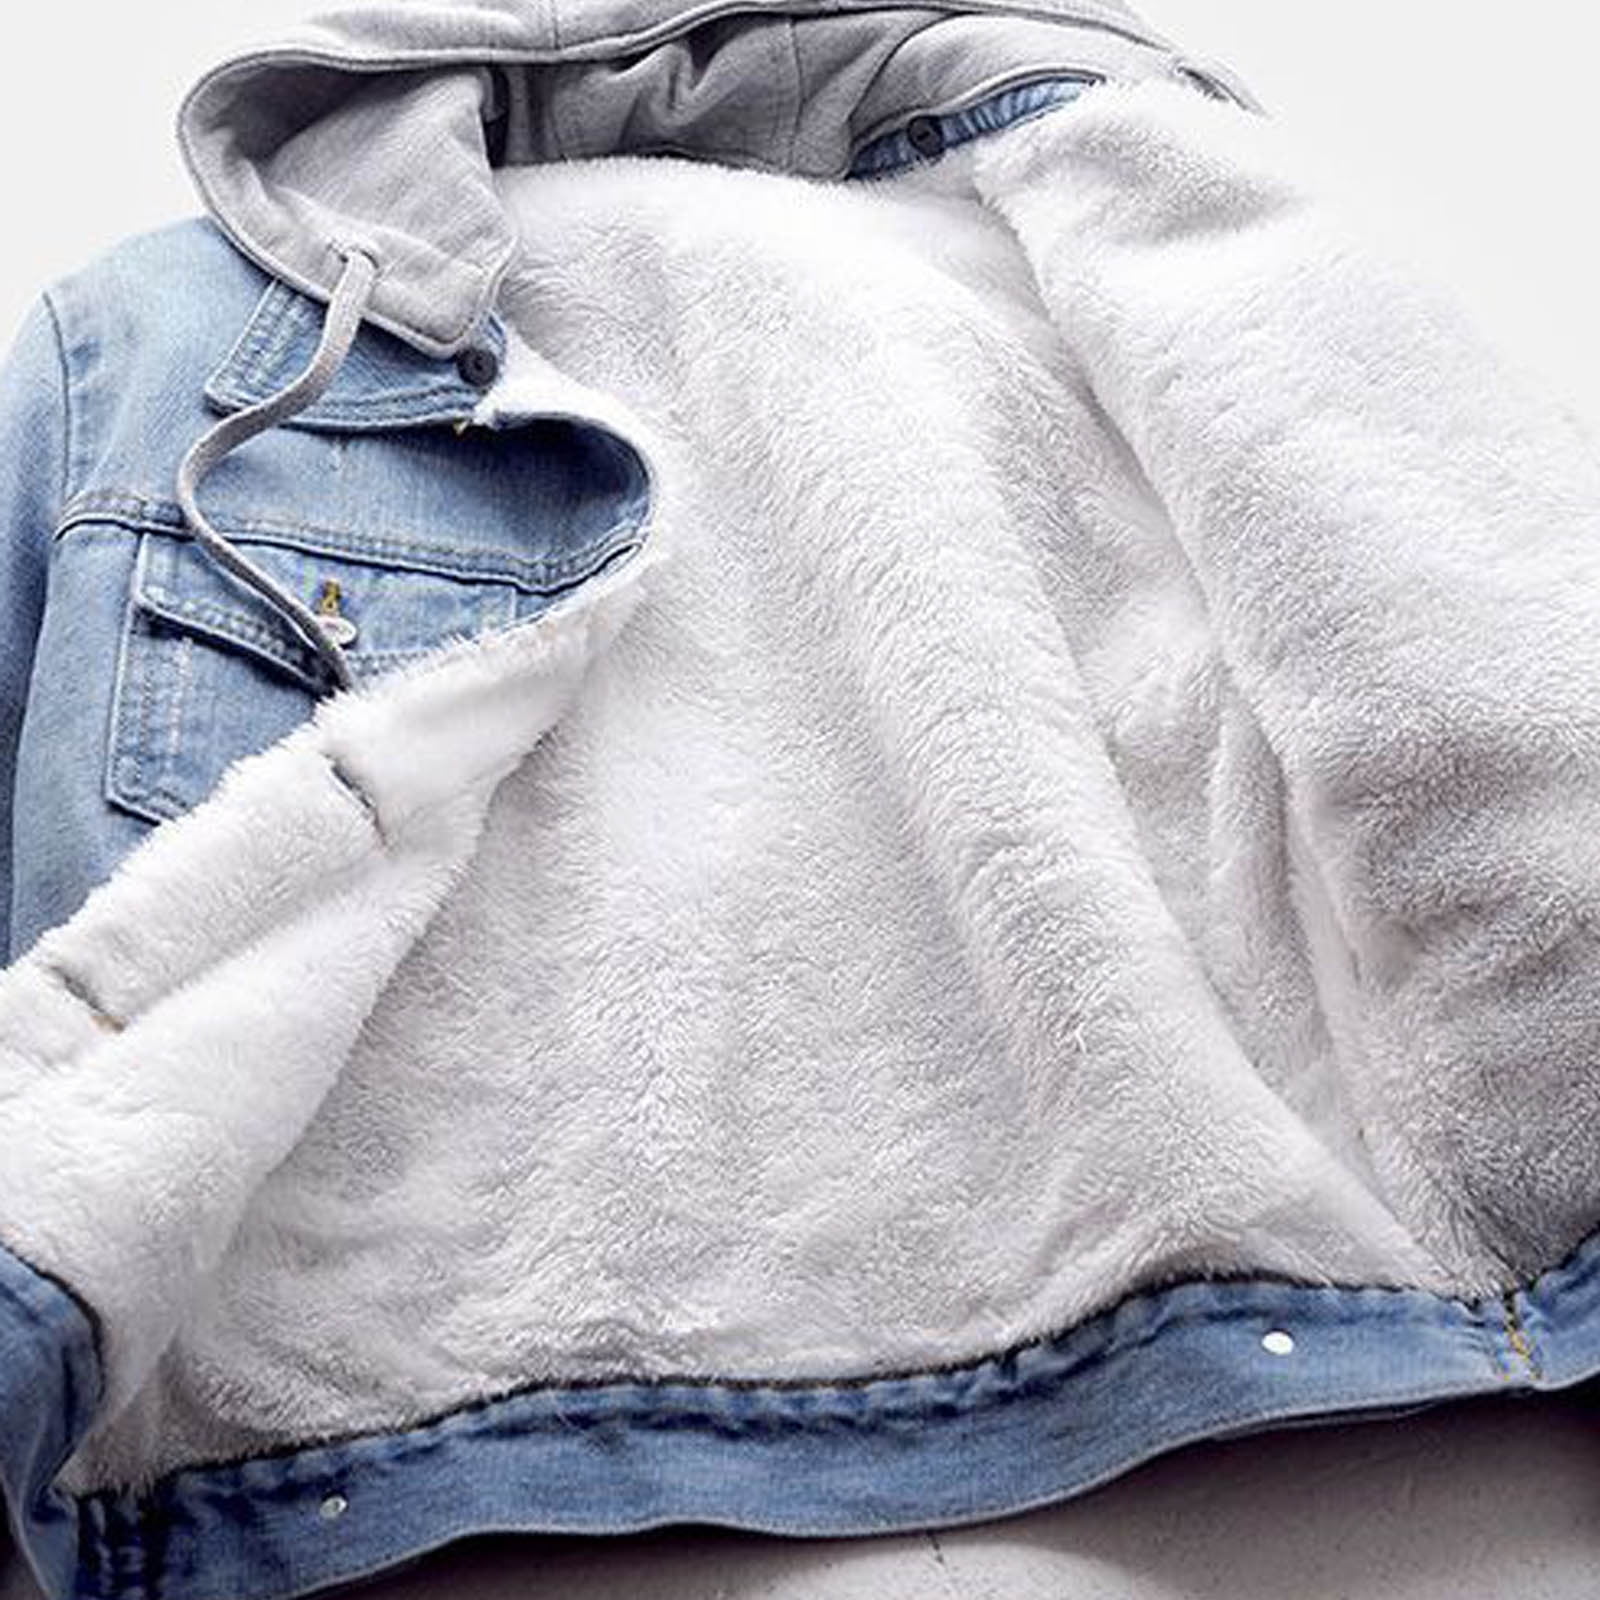 Luxury Women Faux Fur Denim Oversized Winter Jacket Coat Fleece Lined Parka  | eBay